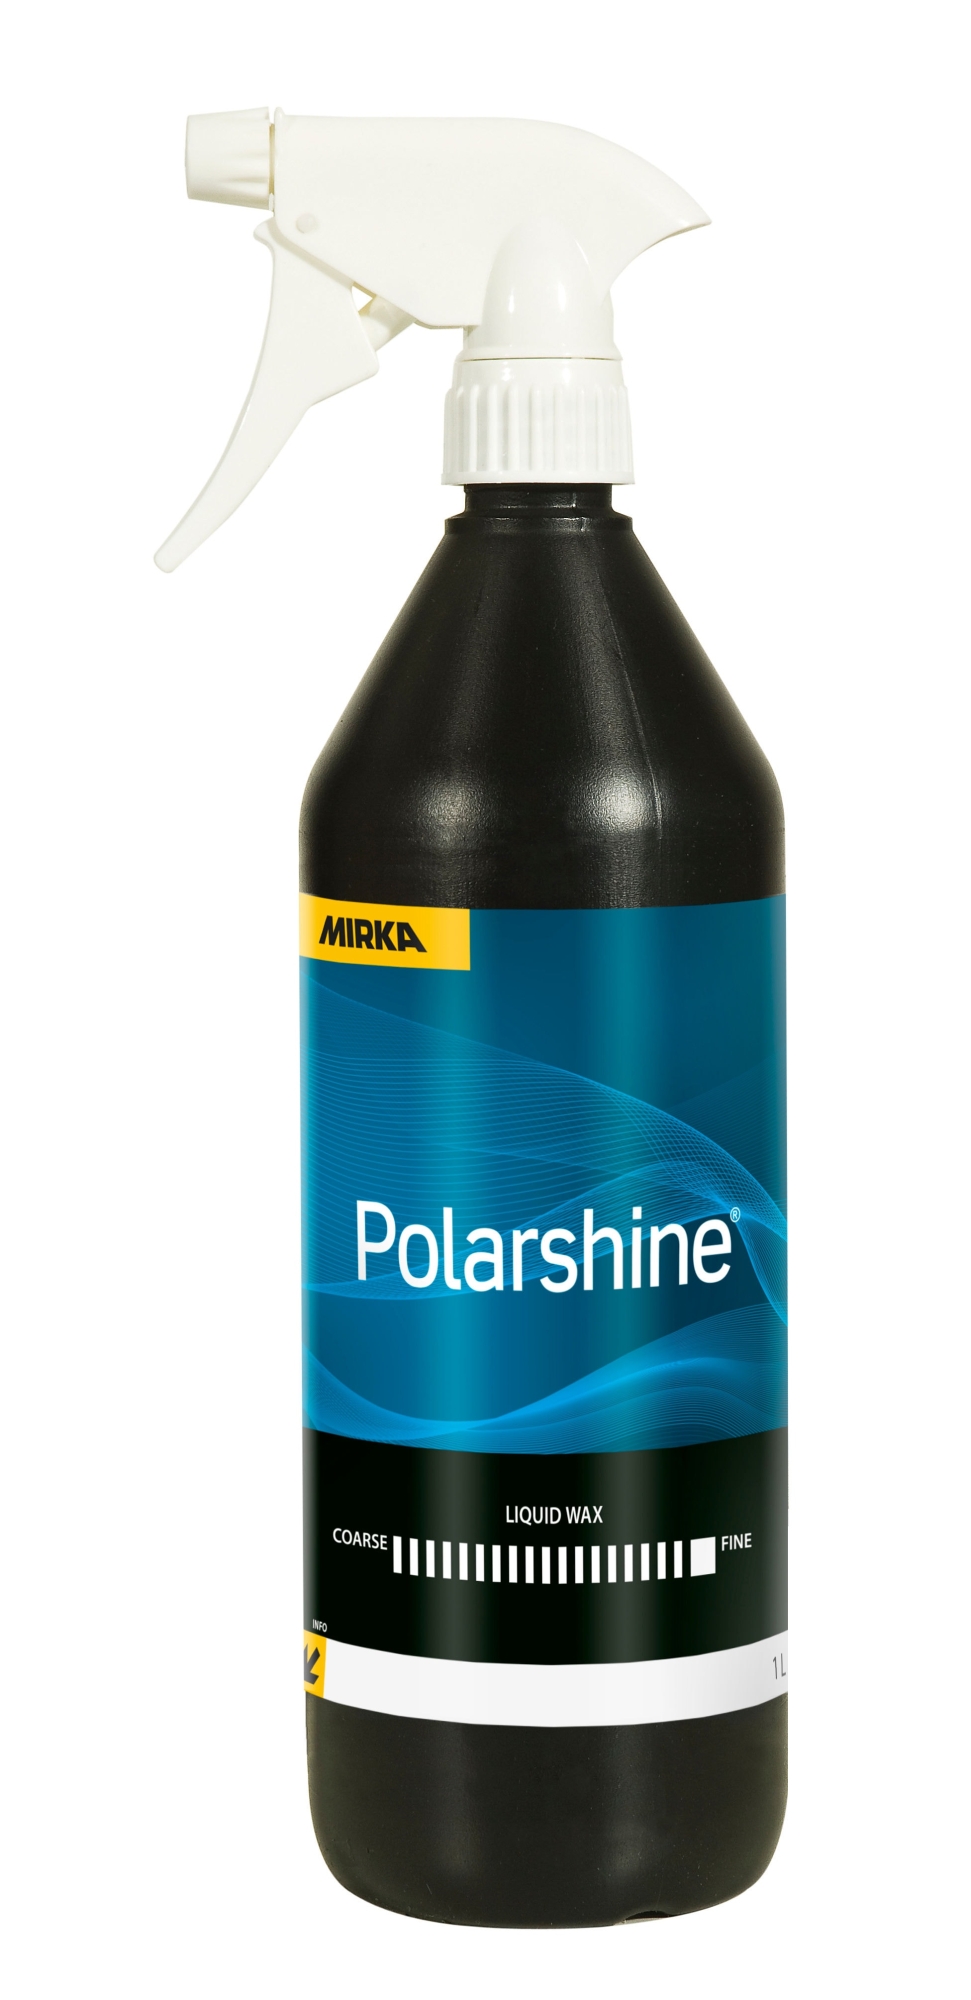 Mirka® Polarshine Liquid Wax 7992725111, 1 Liter, Flüssigwachs, zur schnellen Versiegelung von polierten Oberflächen